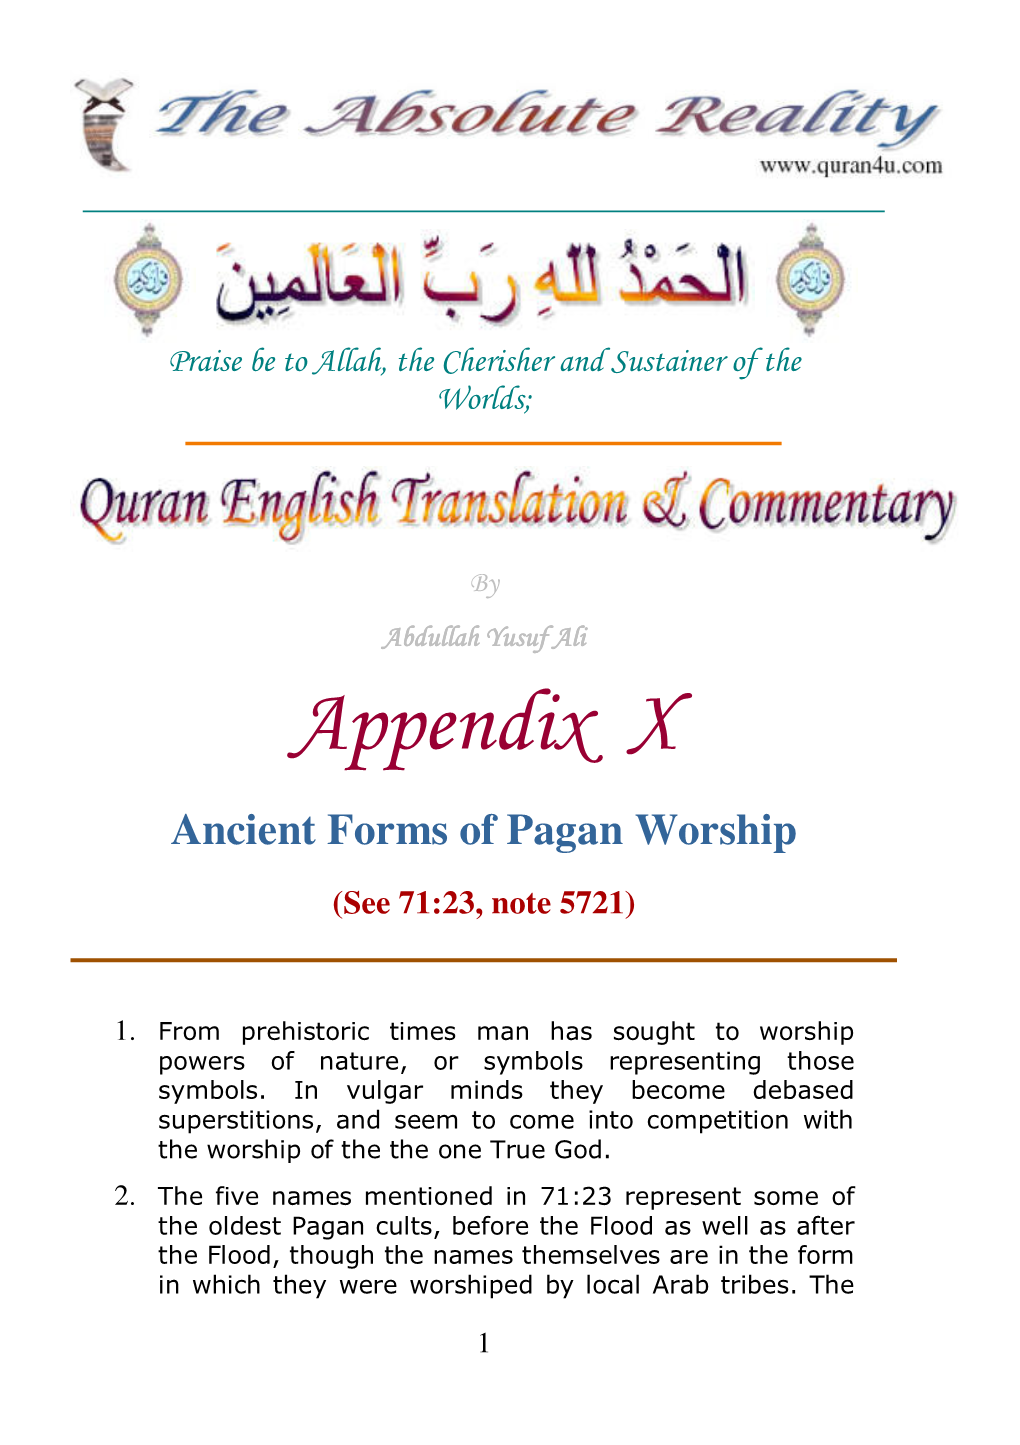 Ancient Forms of Pagan Worship